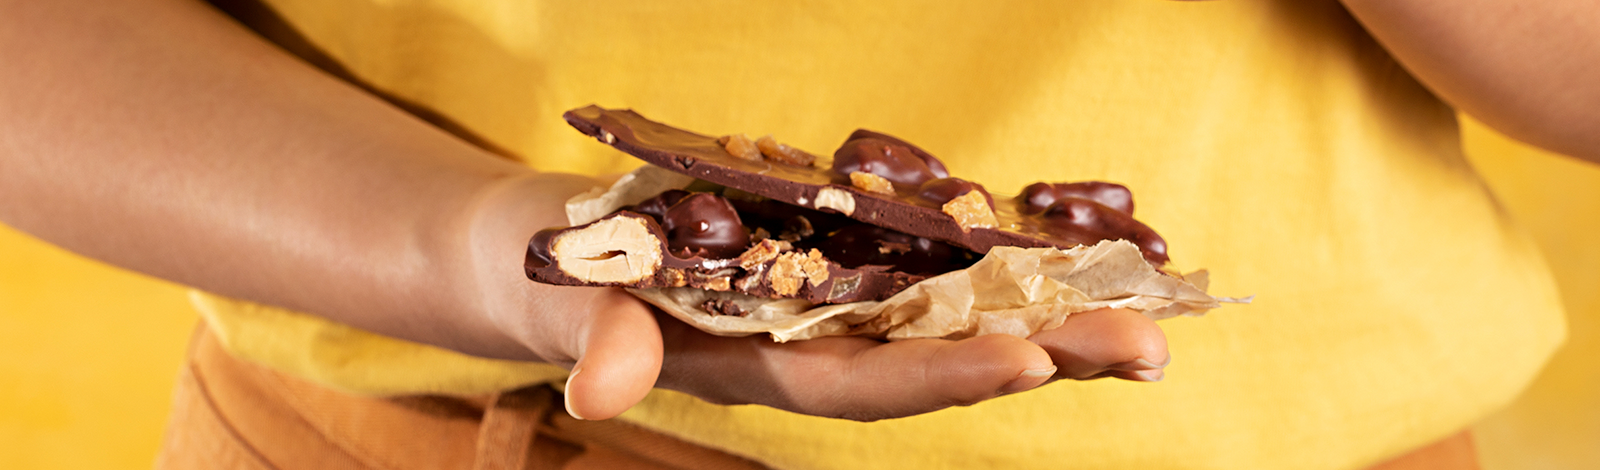 Mão segurando pedaços do chocolate quebra-quebra